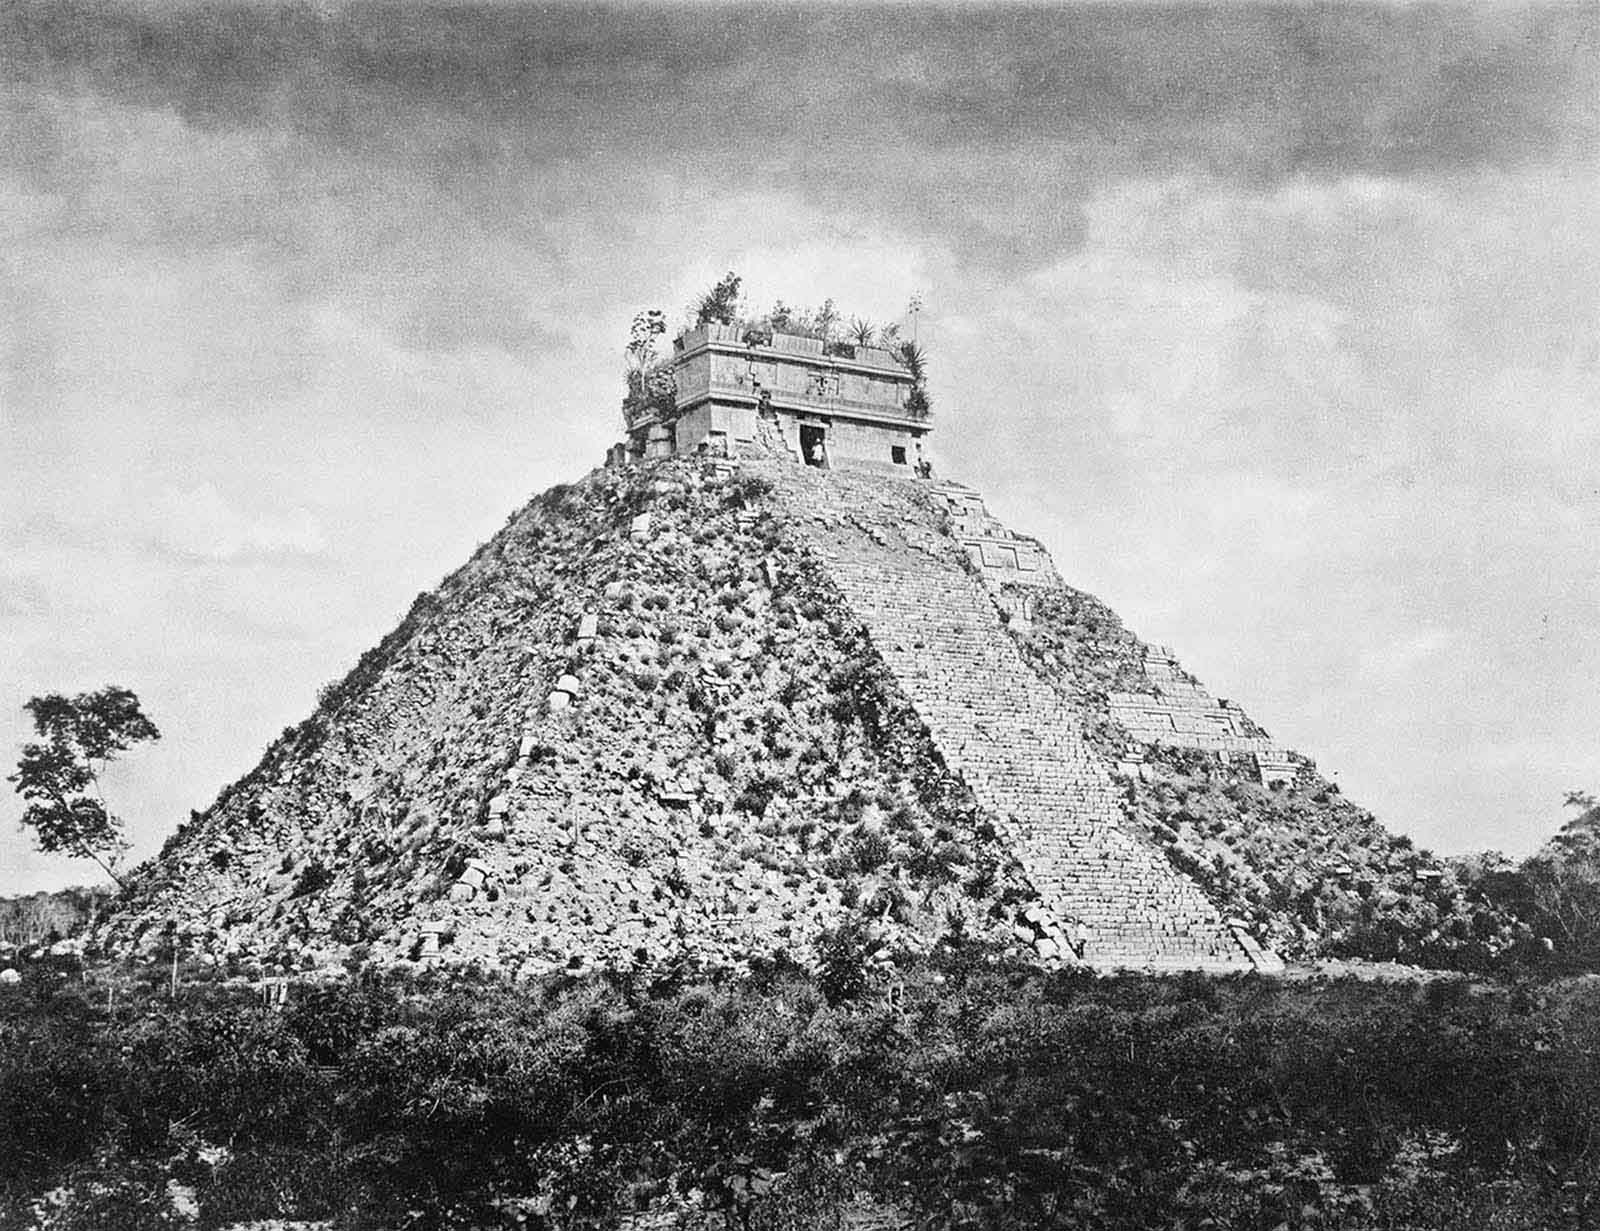 vintage photos discovery maya ruins